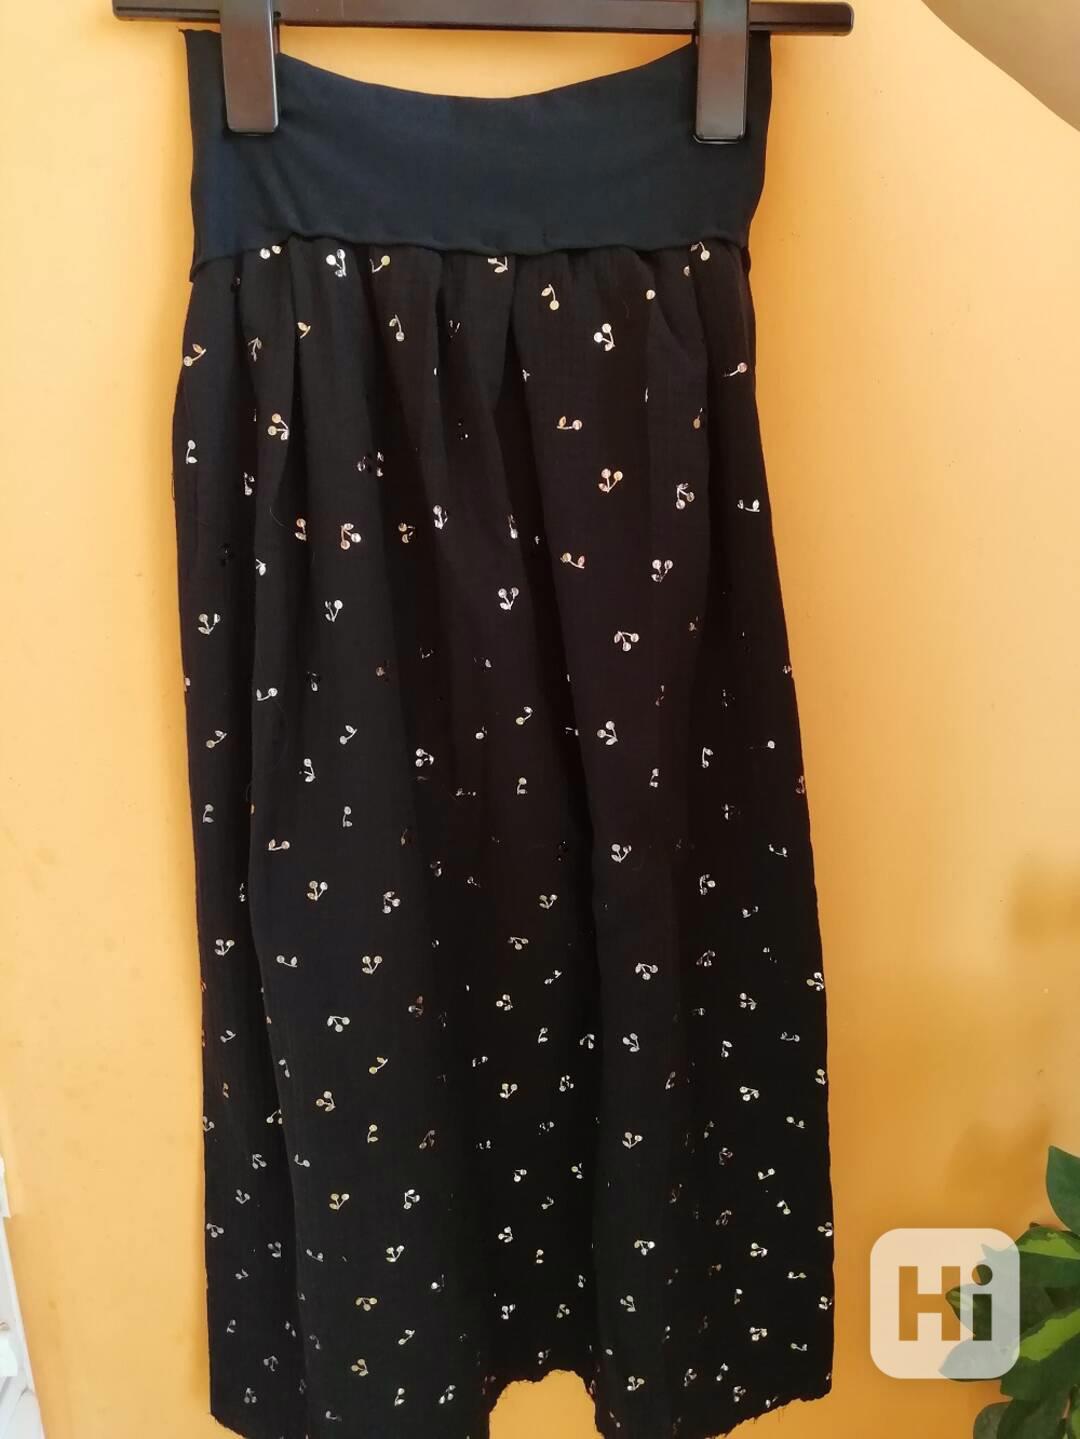 Nová dlouhá šitá sukně - třešně metalické - černá Vel. M - foto 1